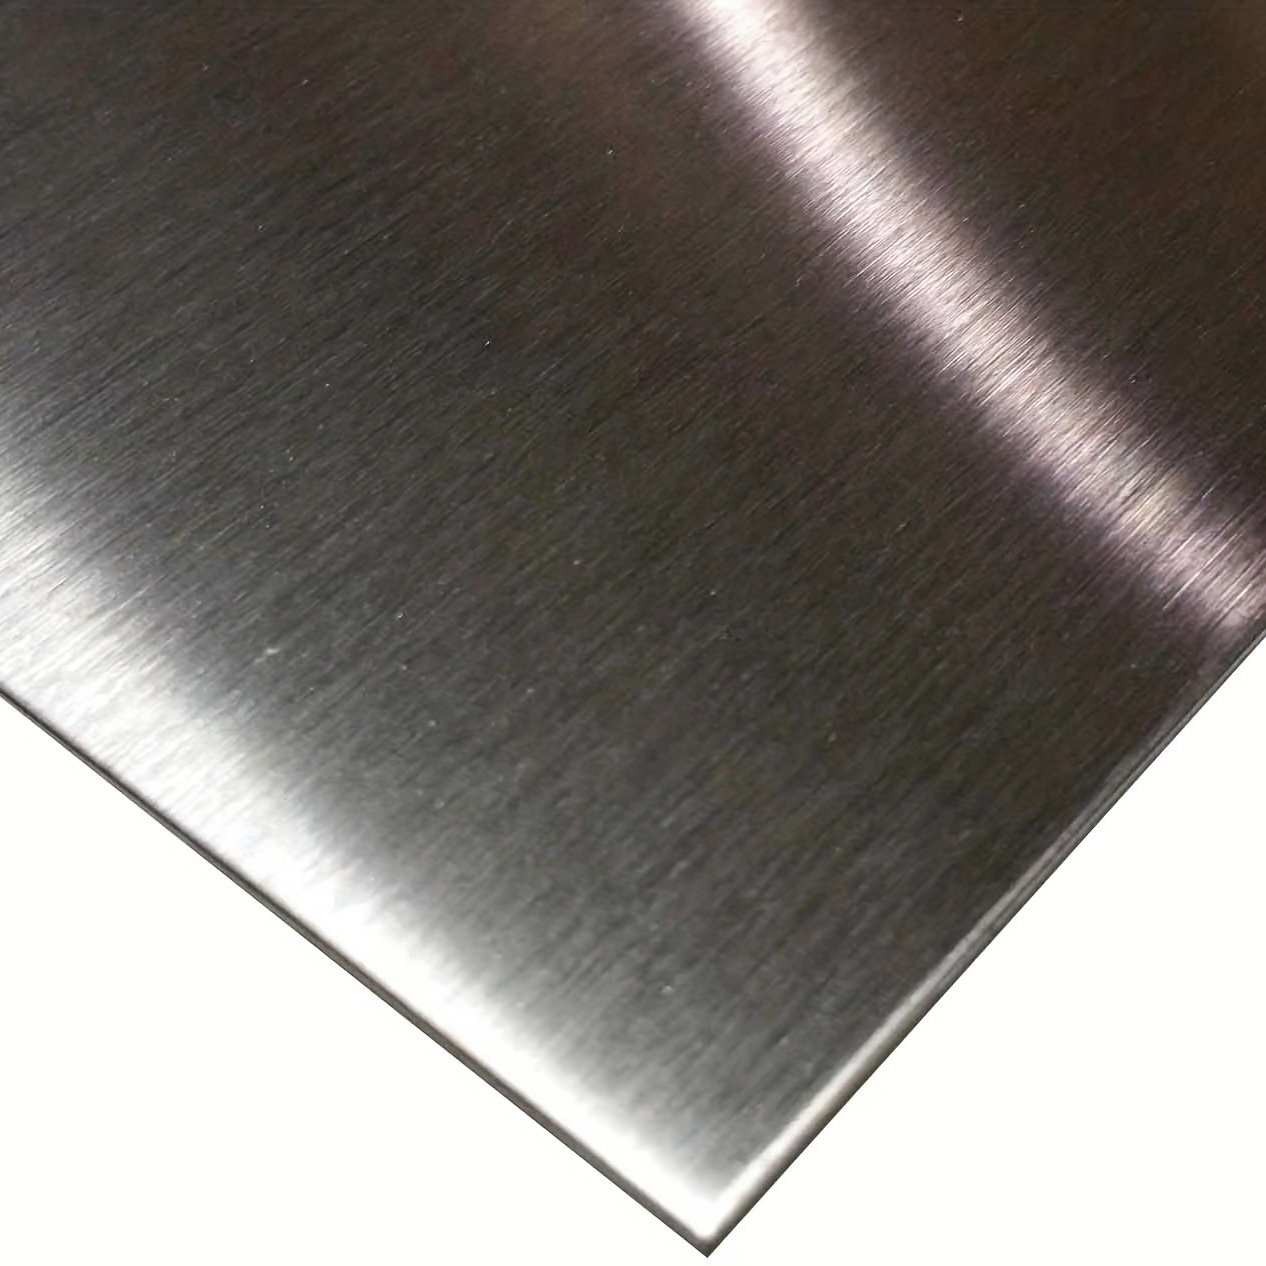  4 piezas de chapa metálica de aluminio de 12 x 12 pulgadas,  placa de metal cuadrada de calibre 18 cubierta con película protectora de  doble cara, panel de placa plana lisa